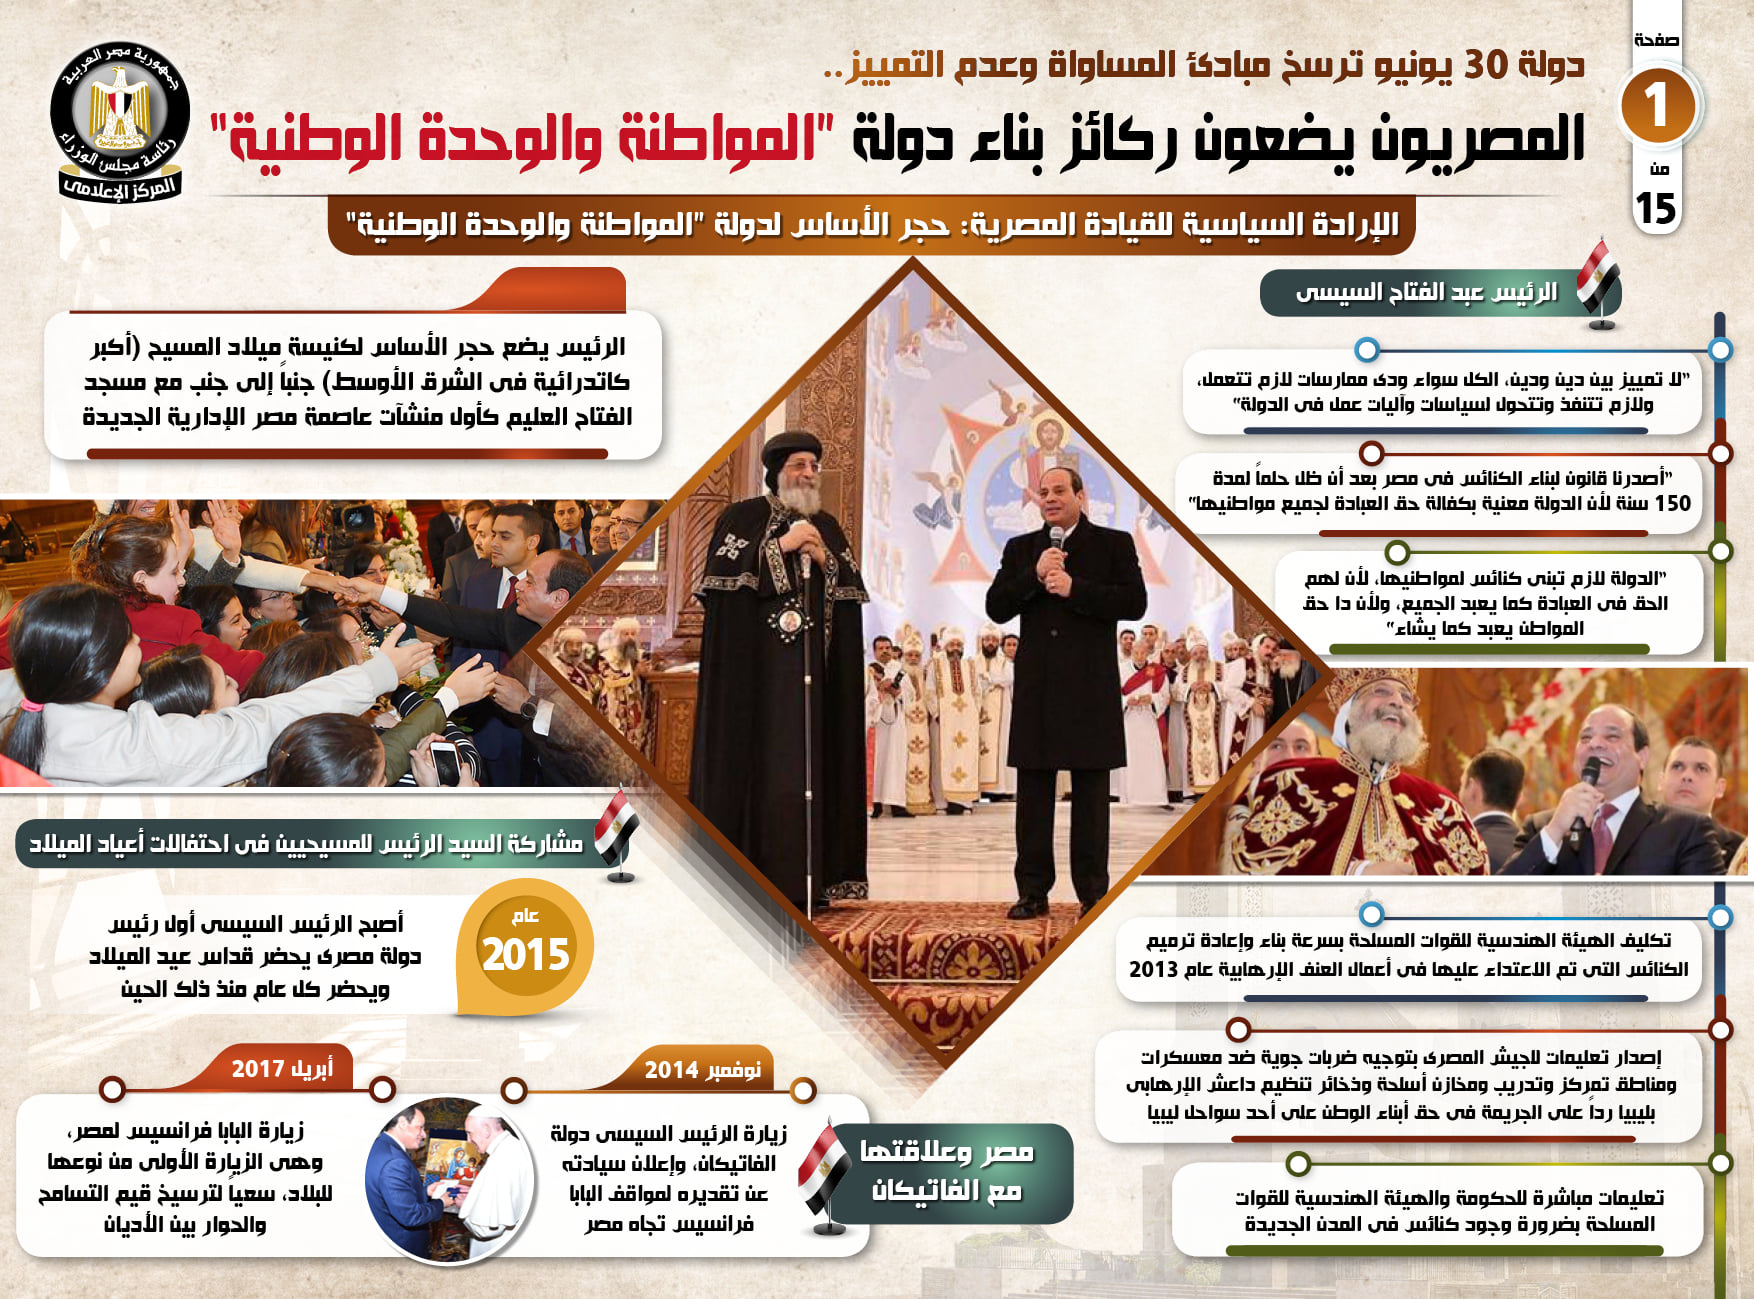   بالإنفوجراف| المصريون يضعون ركائز بناء دولة «المواطنة والوحدة الوطنية»